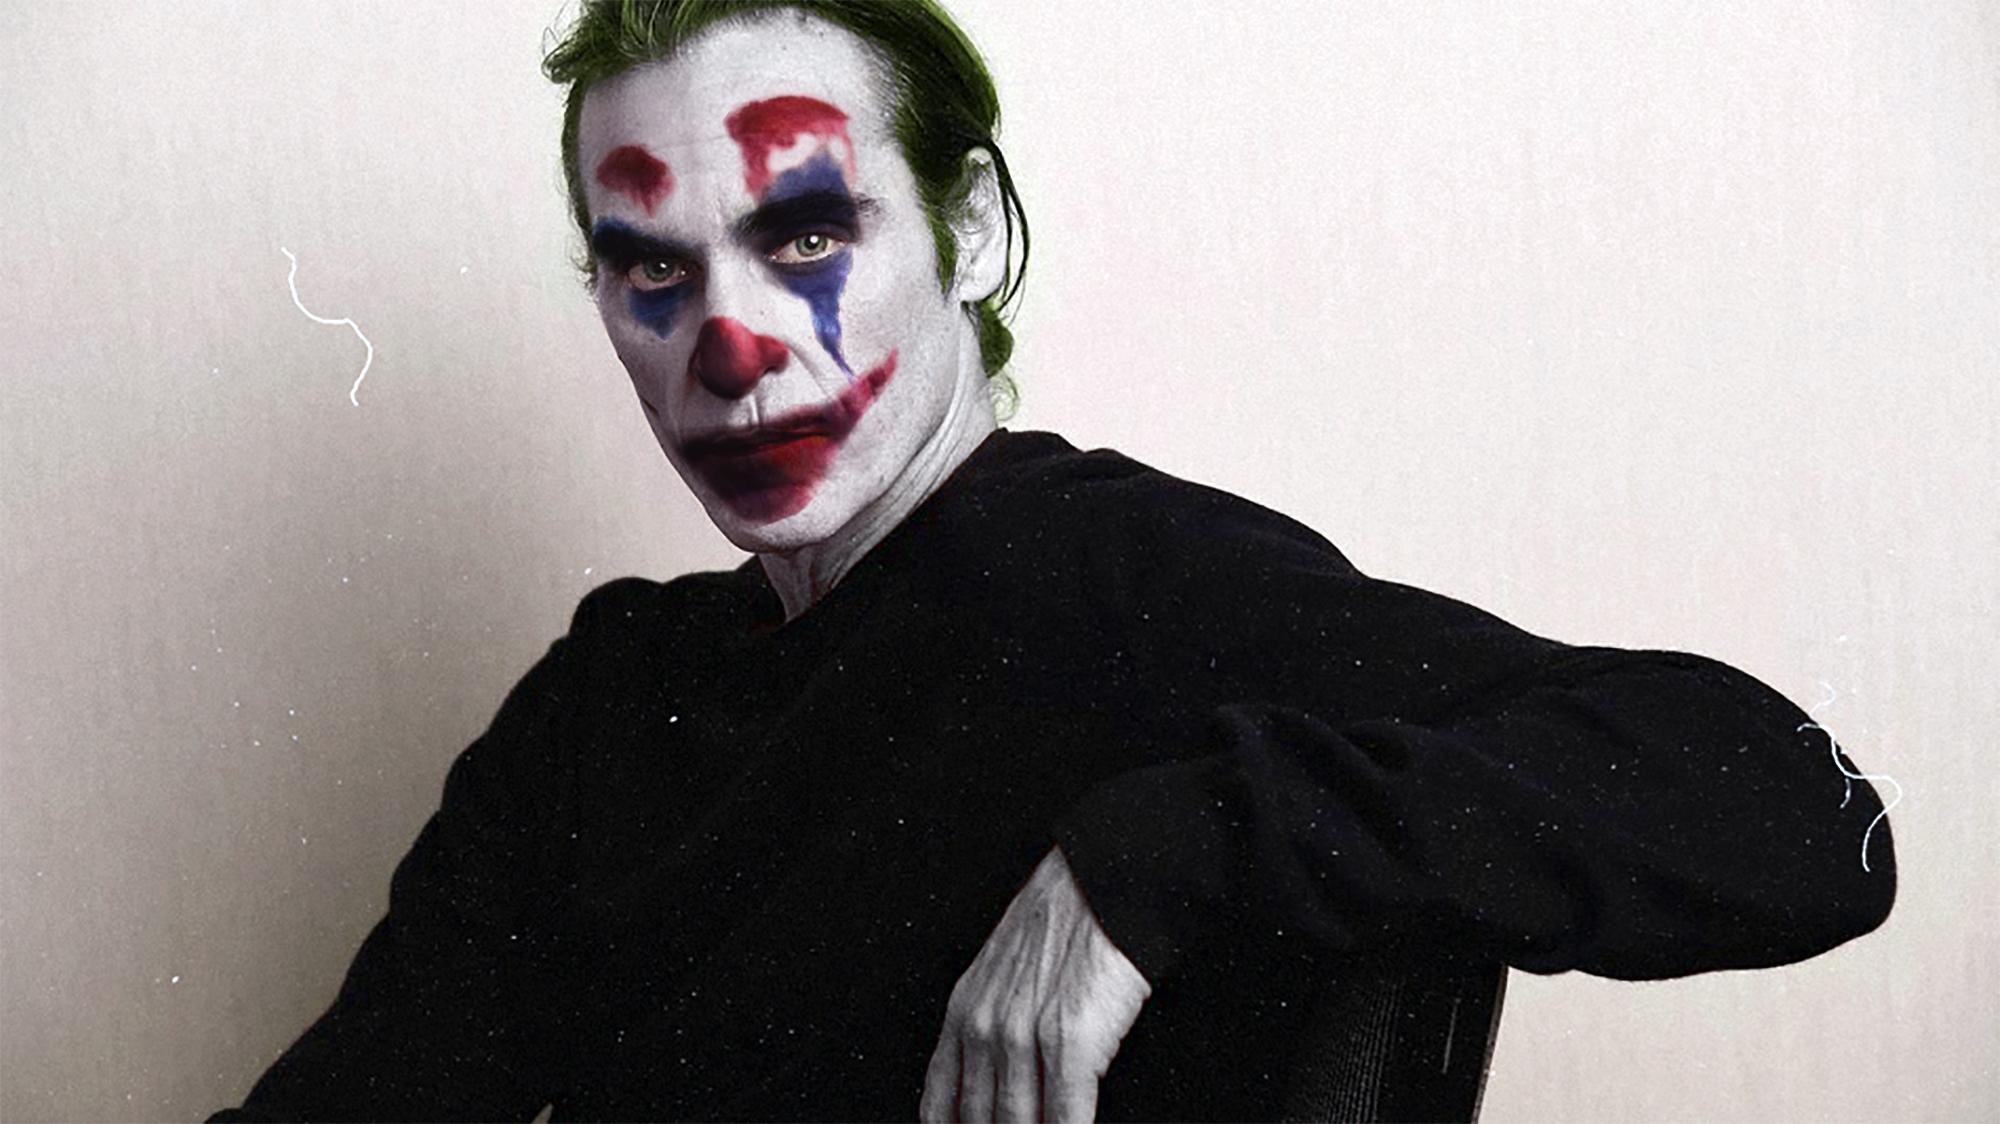 Tại sao phim gốc độc lập như 'Joker' sẽ là xu thế mới bên cạnh vũ trụ siêu anh hùng?